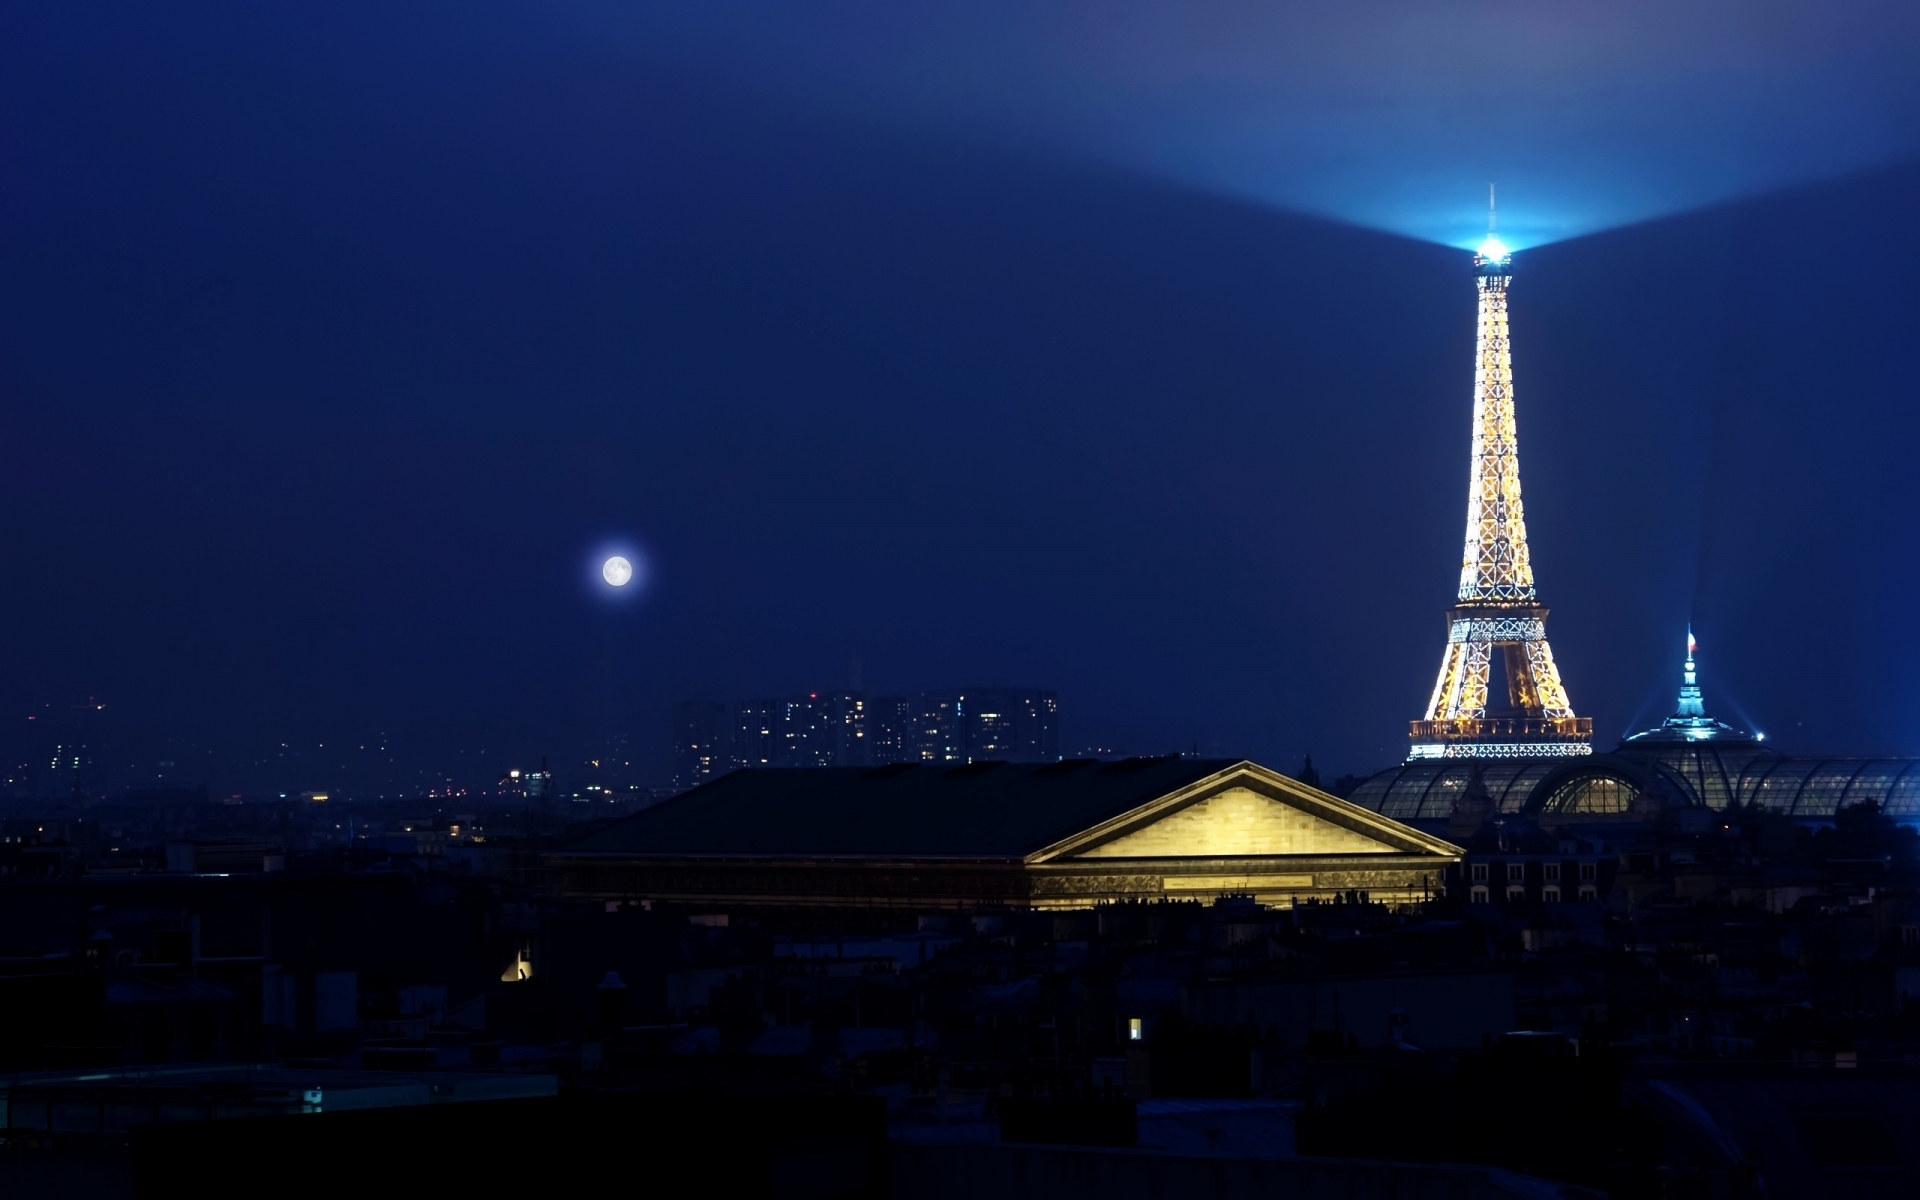 Eiffel Tower Light for 1920 x 1200 widescreen resolution